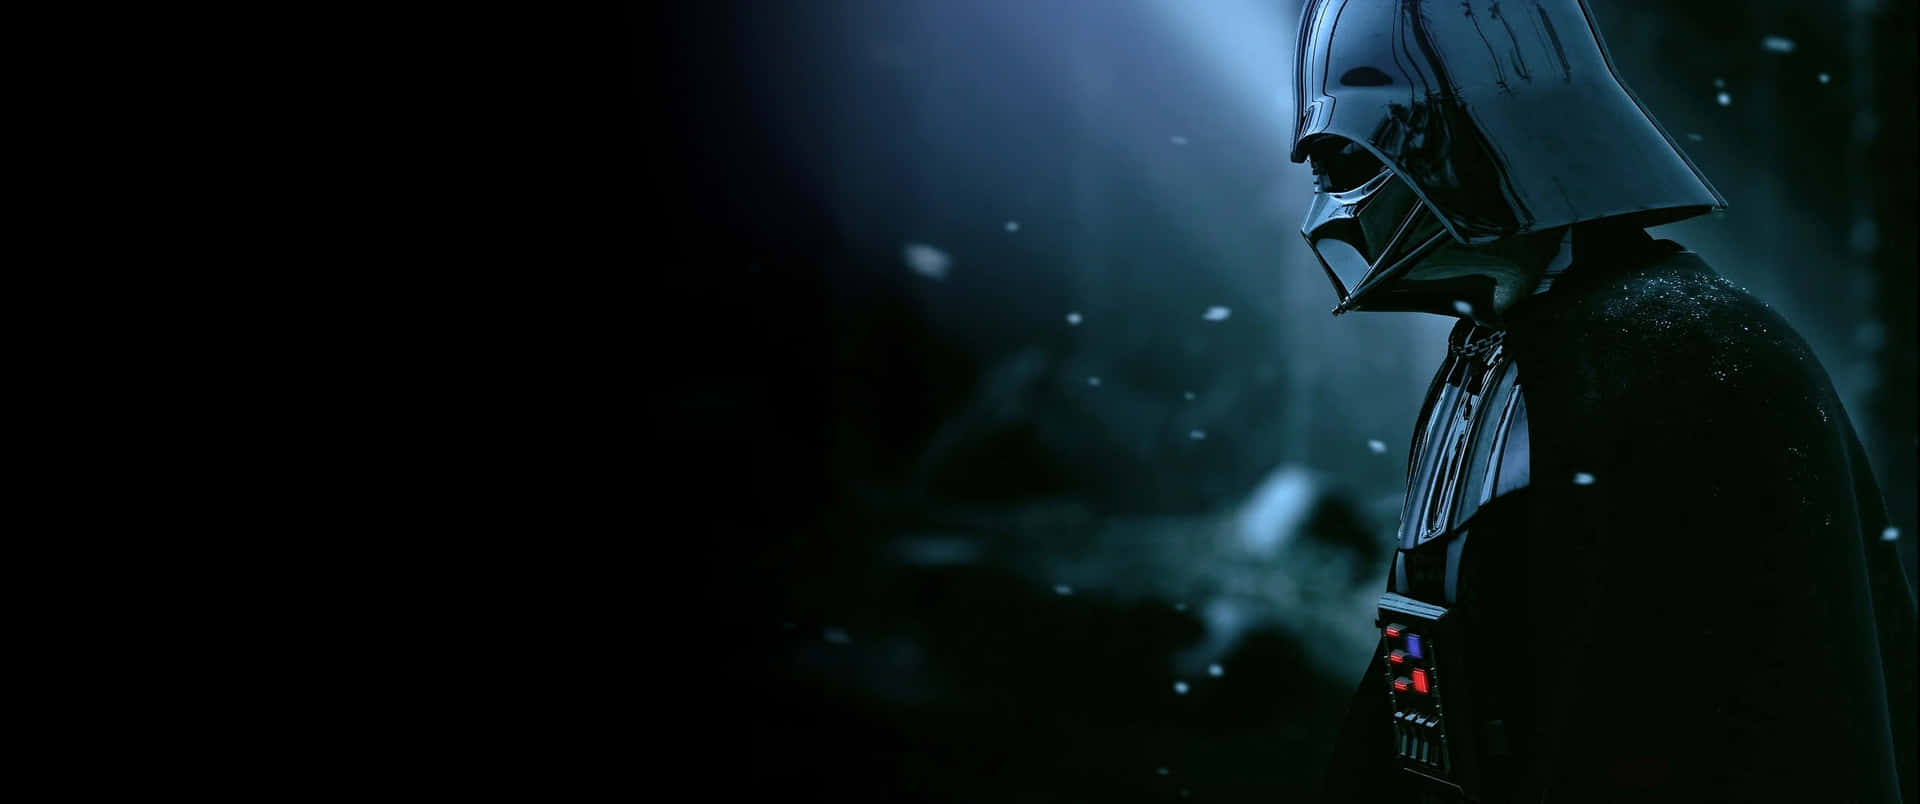 Lukeskywalker Y Un Stormtrooper Se Encuentran Cara A Cara En Un Momento De Tensión Intensa. Fondo de pantalla